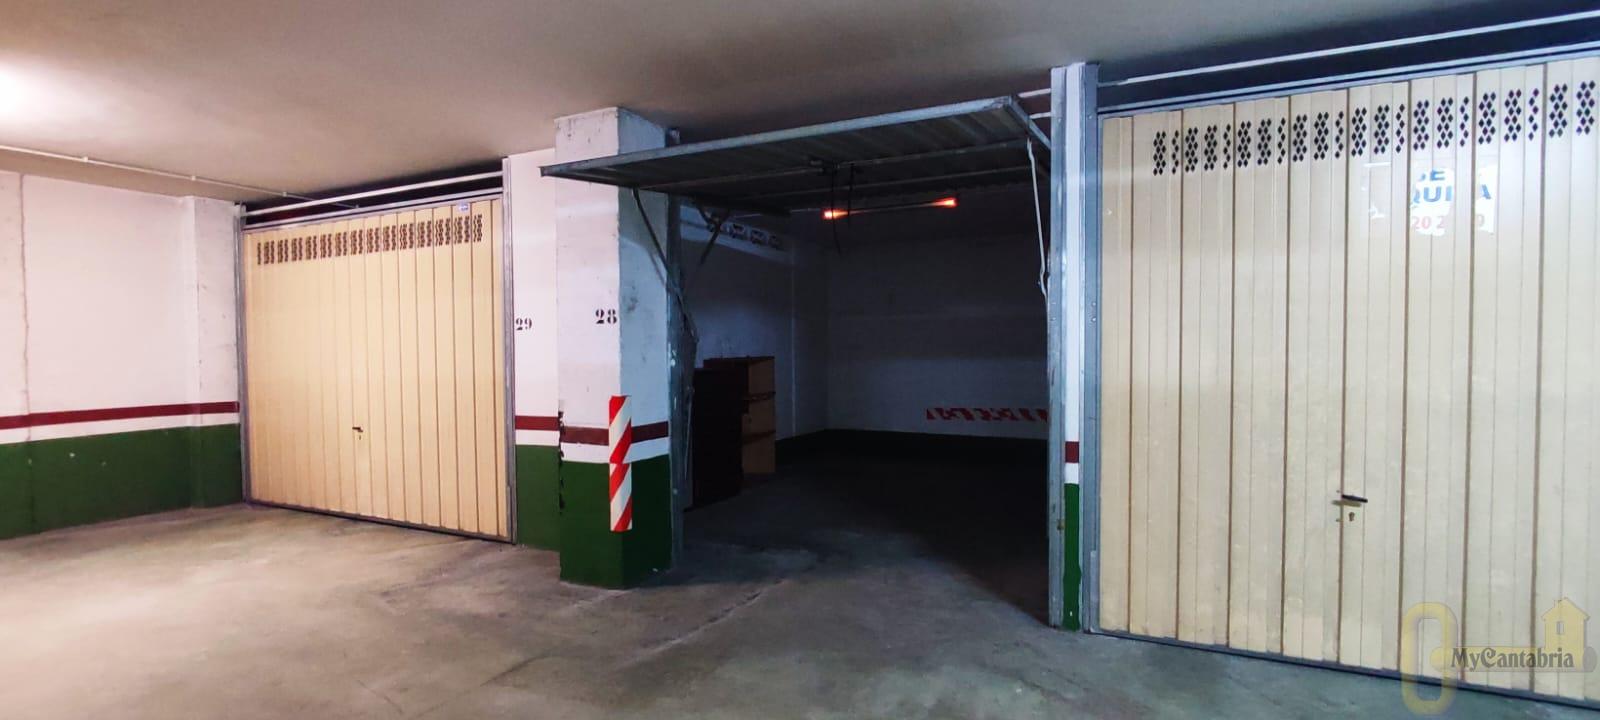 For sale of garage in Santa María de Cayón